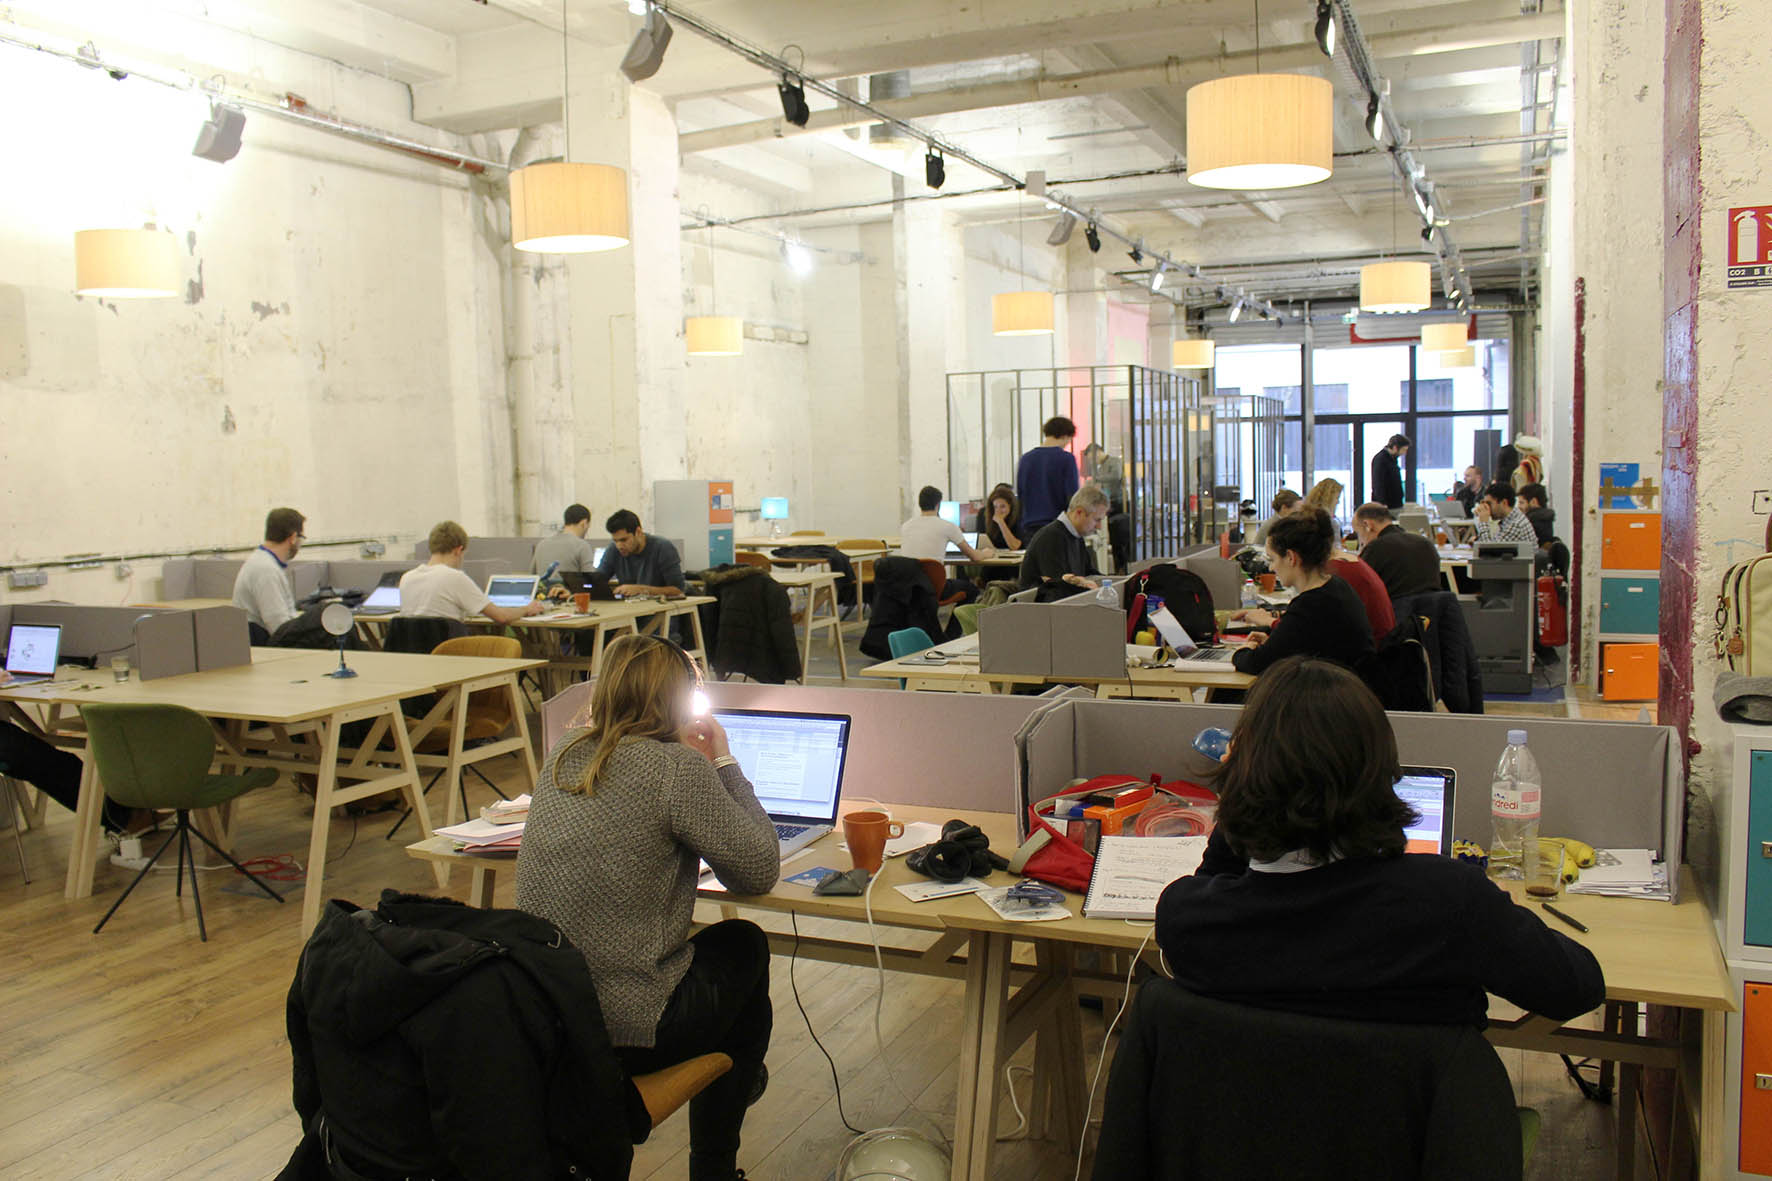 comment-repenser-le-travail-aujourd-hui-un-espace-de-coworking-situe-dans-le-quartier-de-bastille-a-paris